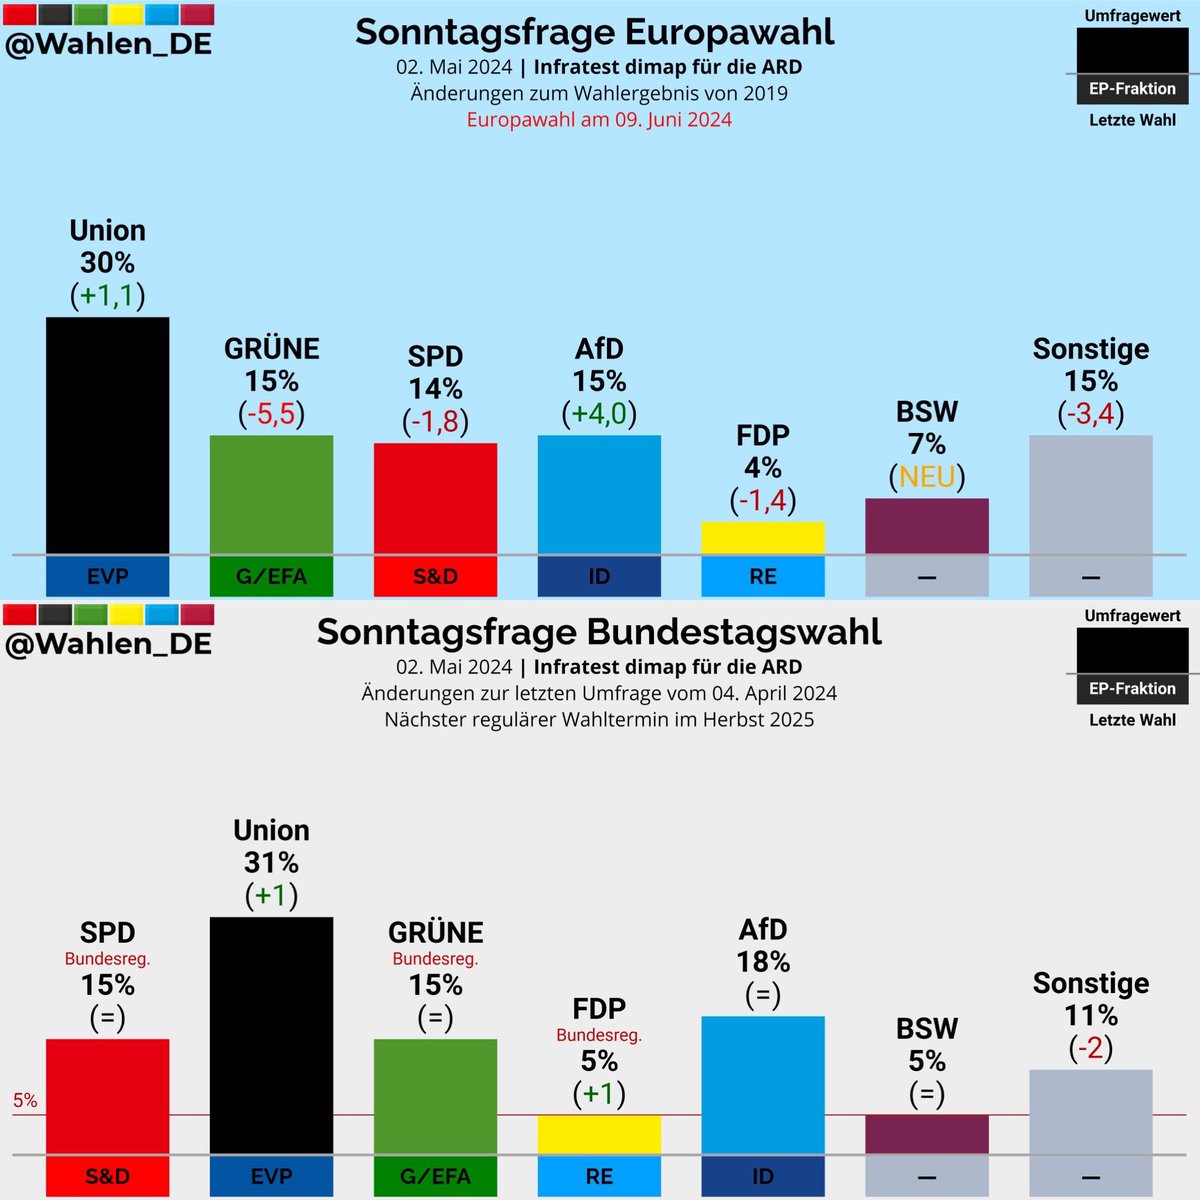 Gut 5 Wochen vor der #Europawahl ist die Union stärker als rot & grün zusammen. Vor allem der Absturz der Grünen tut richtig gut. Im #Europaparlament ist es bald vorbei mit der links-grünen Mehrheit! #CDUCSU #CDU #CSU